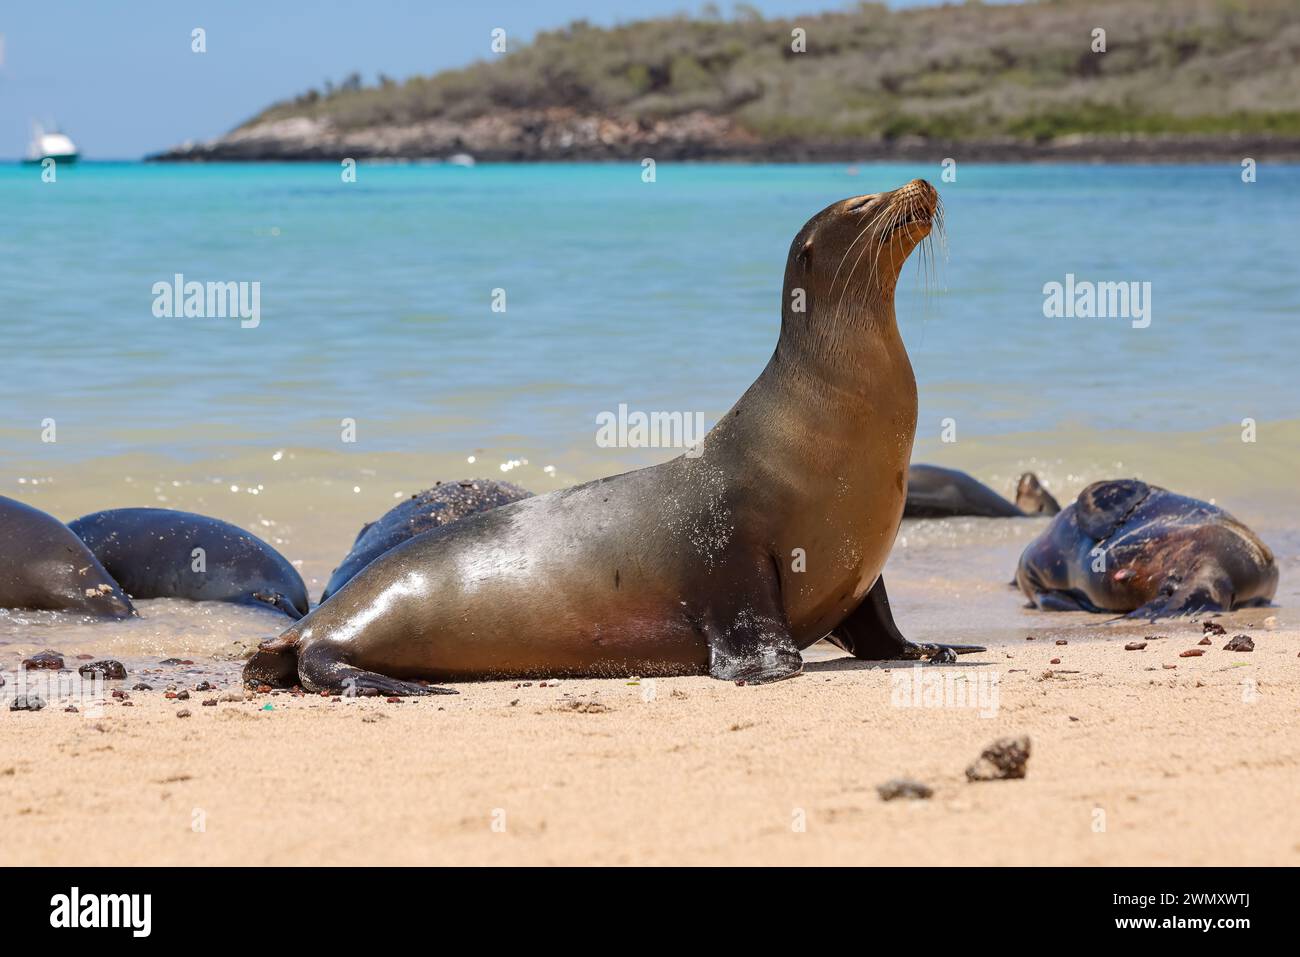 Colonie de lions de mer des Galapagos (Zalophus wollebaeki) vivant ensemble sur la plage de l'île de Santa Fe, Barrington Bay, Galapagos, Équateur Banque D'Images